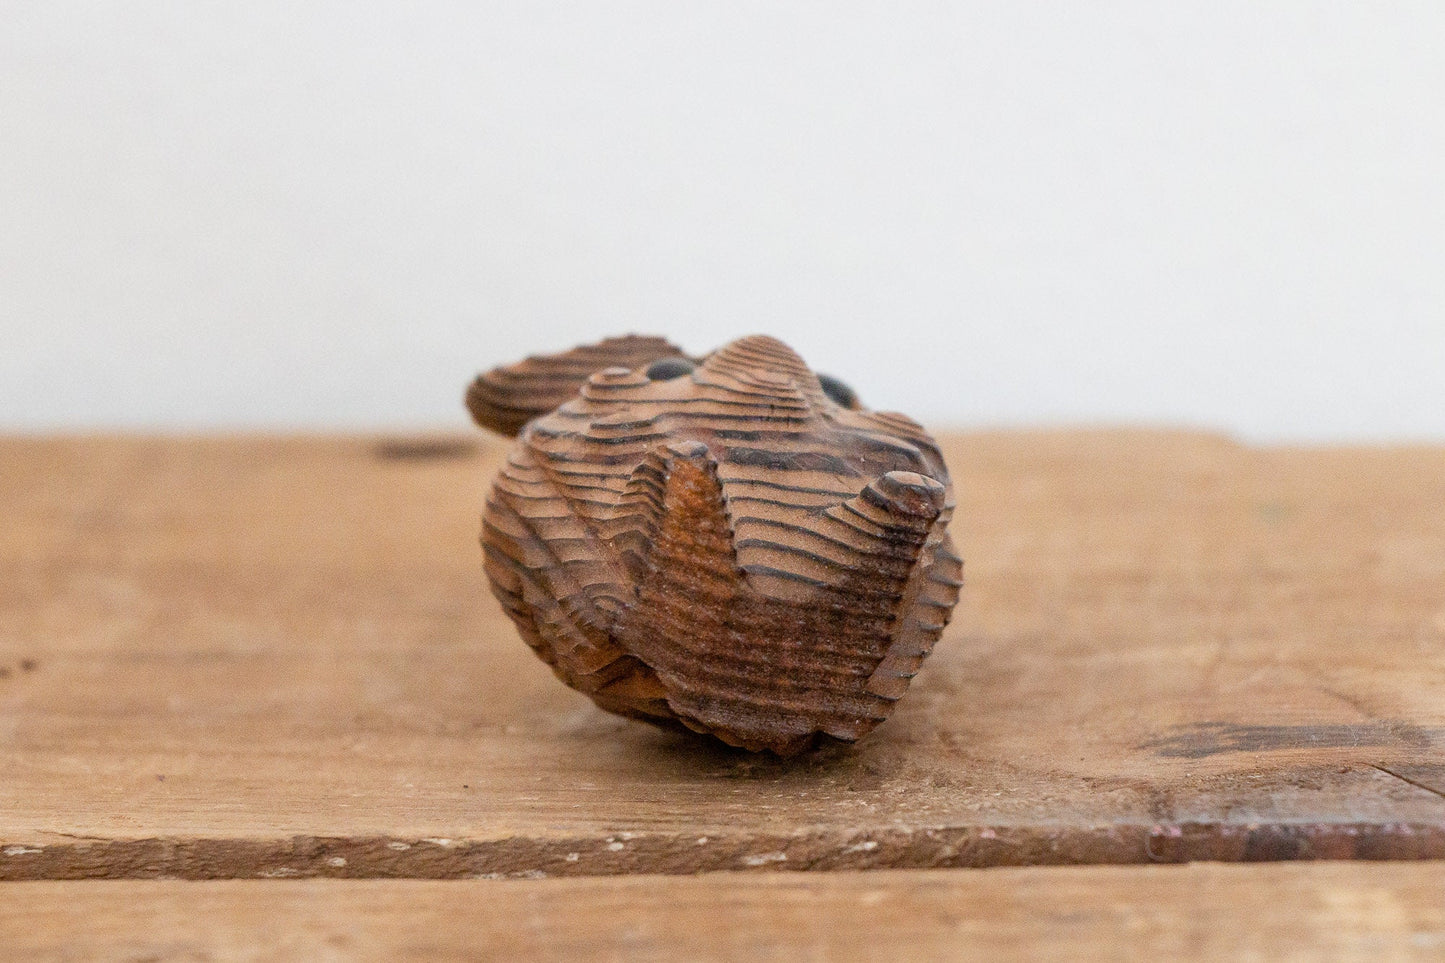 Wooden Owl Figurine Vintage Made in Japan Shelf Decor - Eagle's Eye Finds